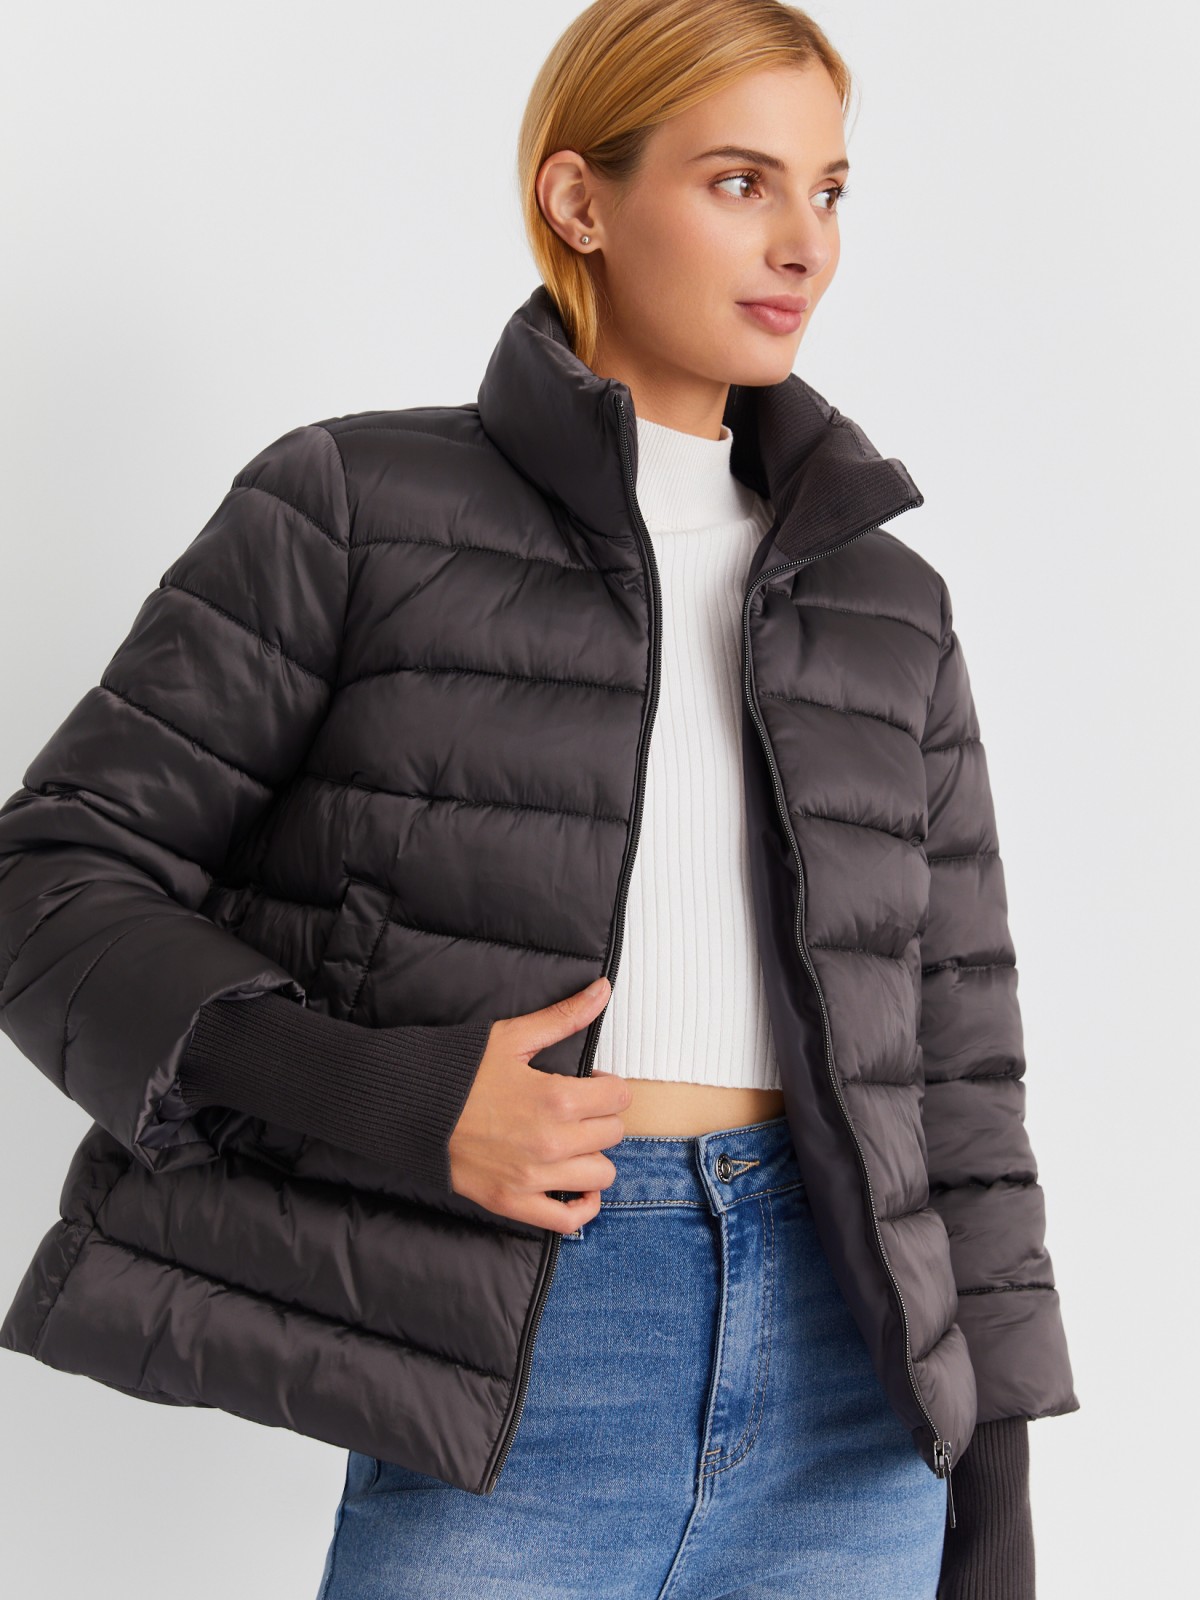 Тёплая укороченная куртка с воротником-стойкой и трикотажными манжетами zolla 023345102254, цвет темно-серый, размер XS